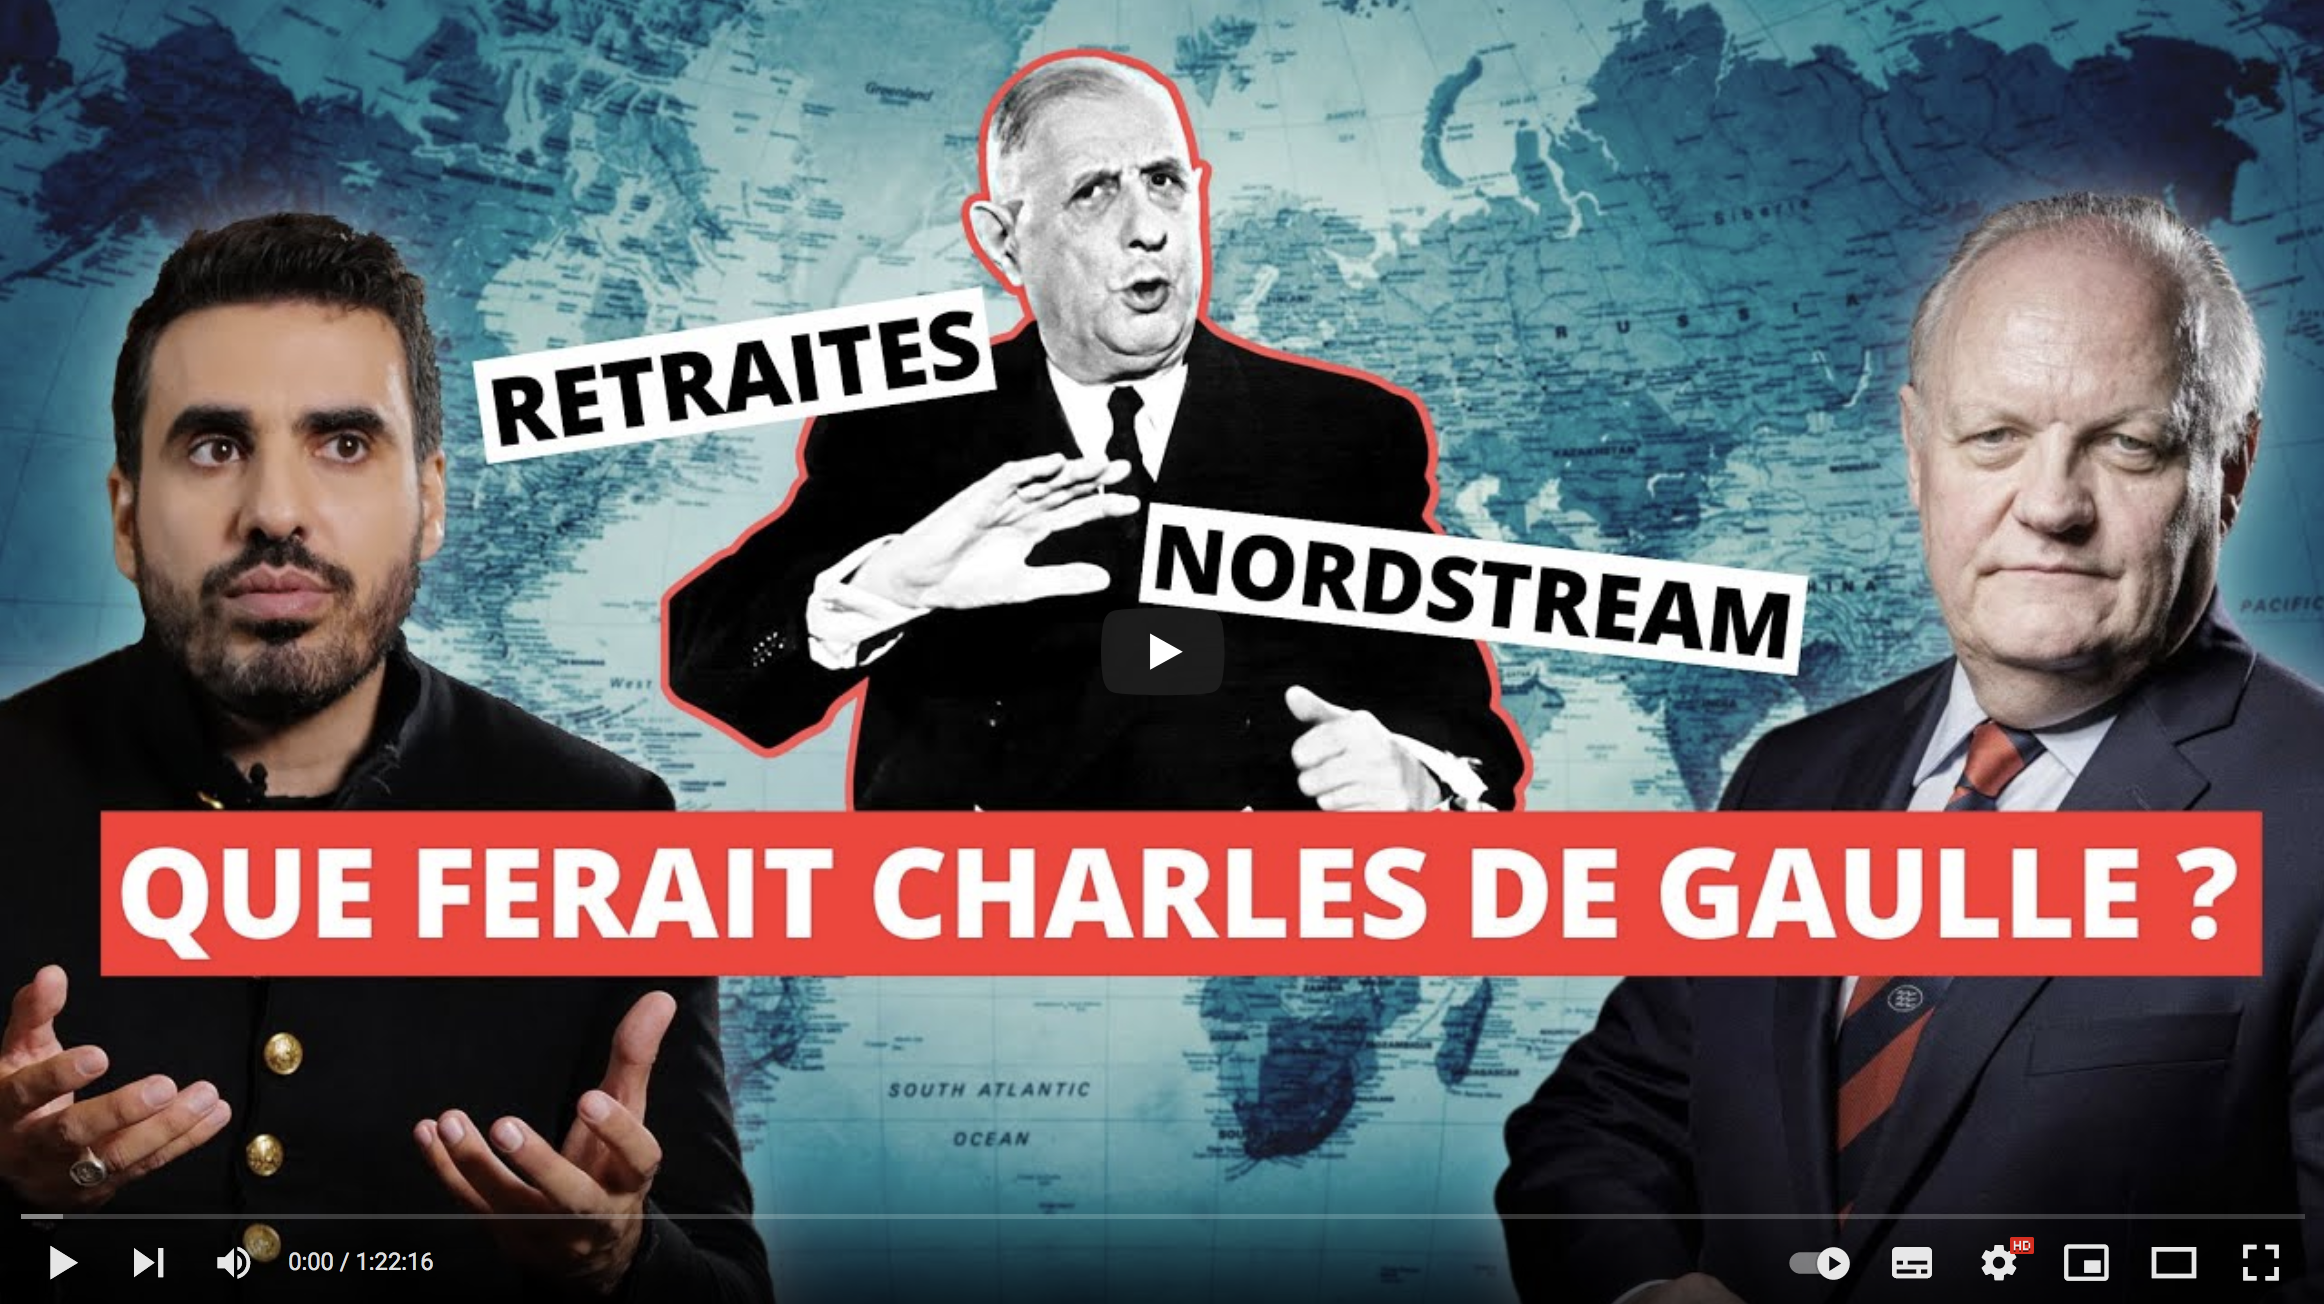 Retraites, NordStream : Que ferait Charles de Gaulle ? (François Asselineau)